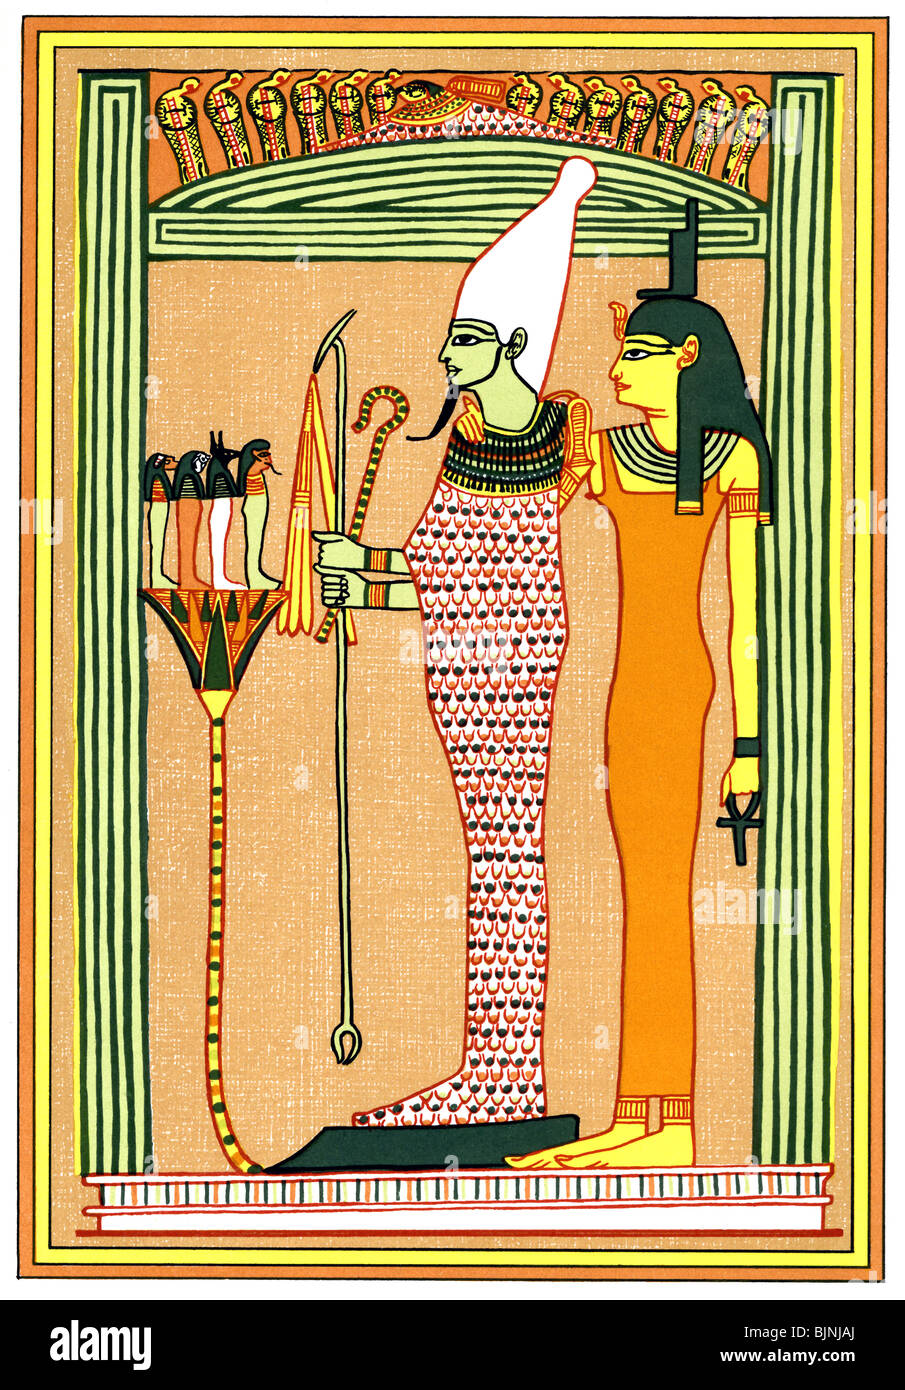 Osiris, le dieu égyptien de la fertilité et de la mort, porte la couronne blanche de Haute Égypte et tient le sceptre, Crook, le fléau. Banque D'Images